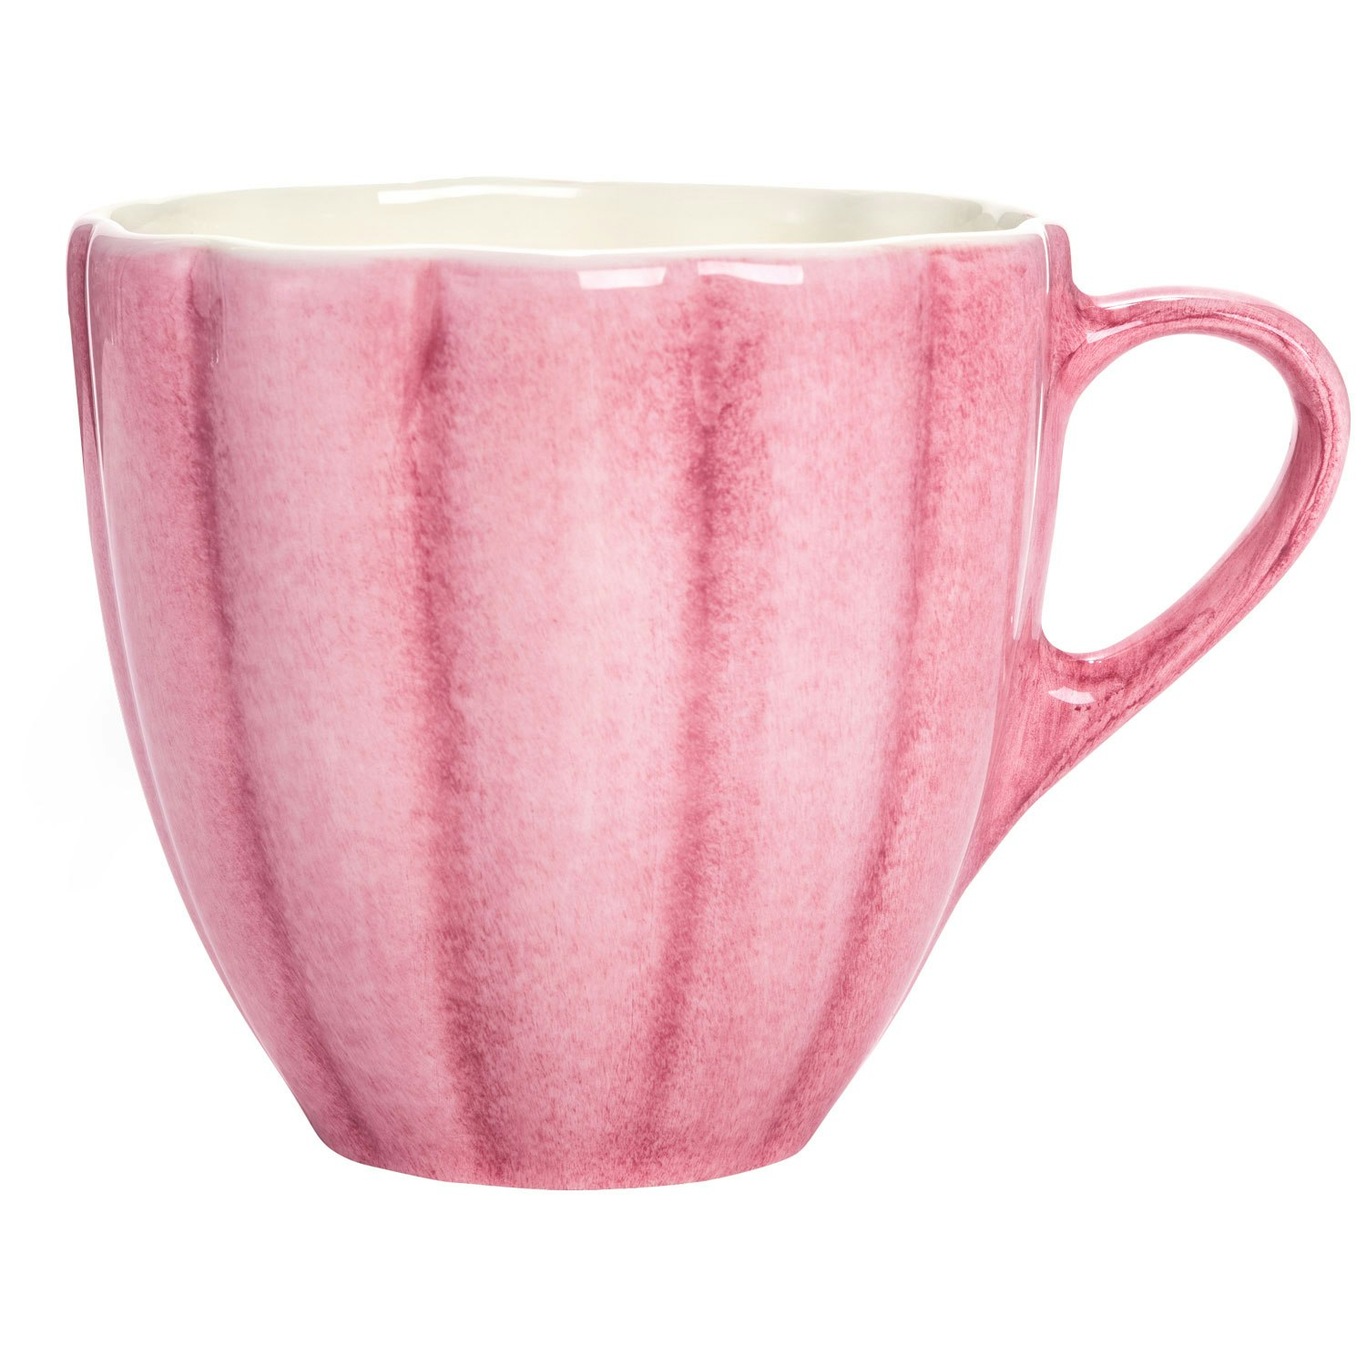 Oyster Mug 60 cl, Pink